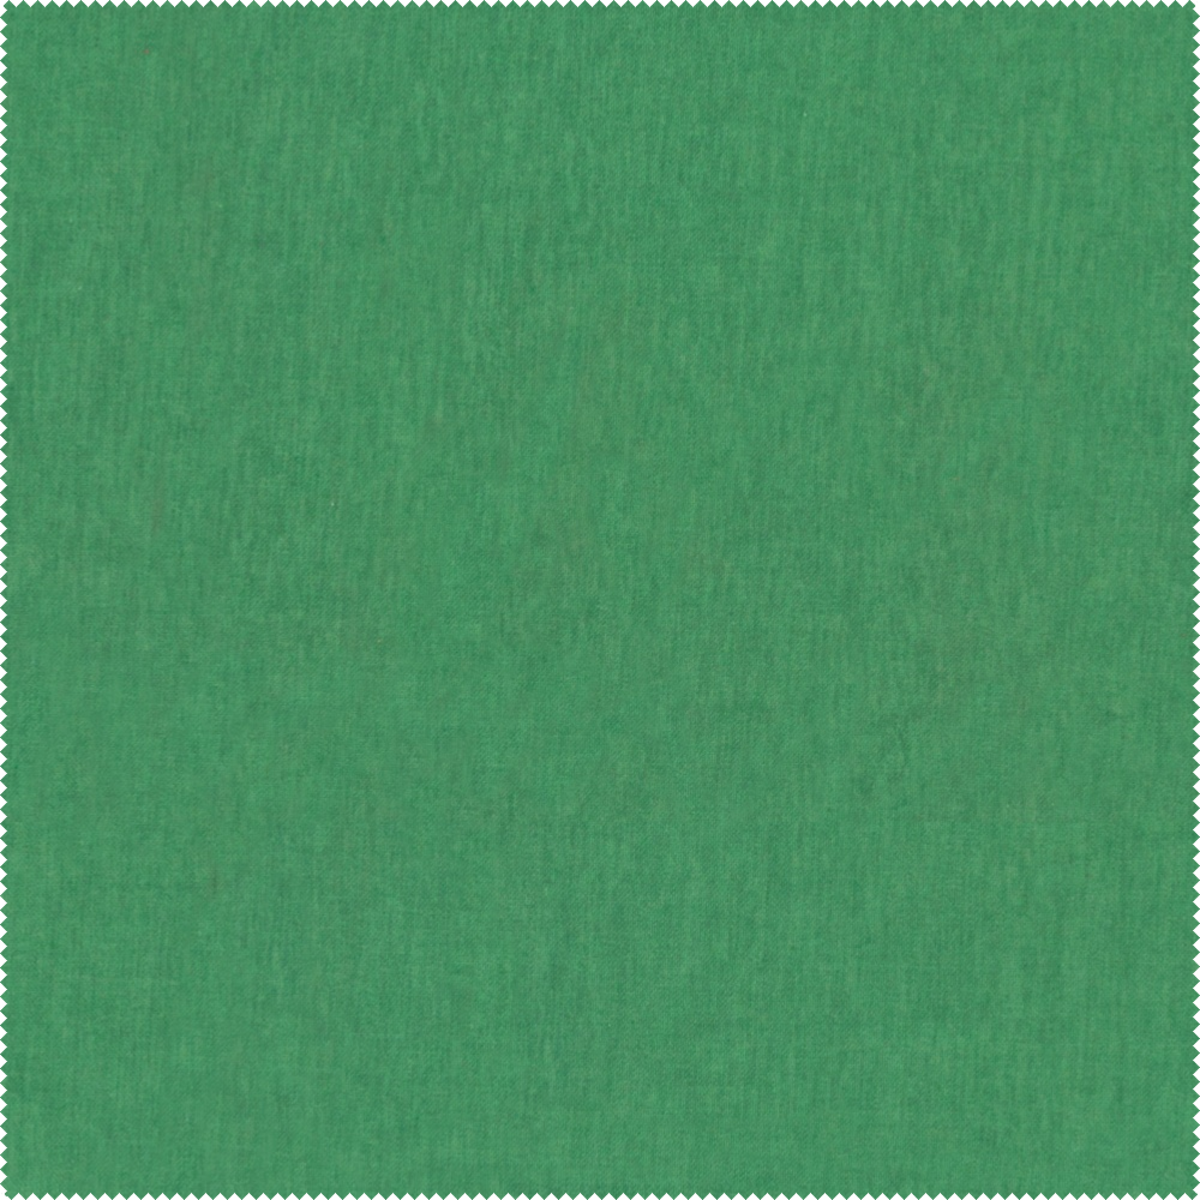 Przyjemna w dotyku tkanina Mystic 187 Aquaclean w kolorze zielonym. Bardzo wytrzymała, miękka, idealna na fotele.